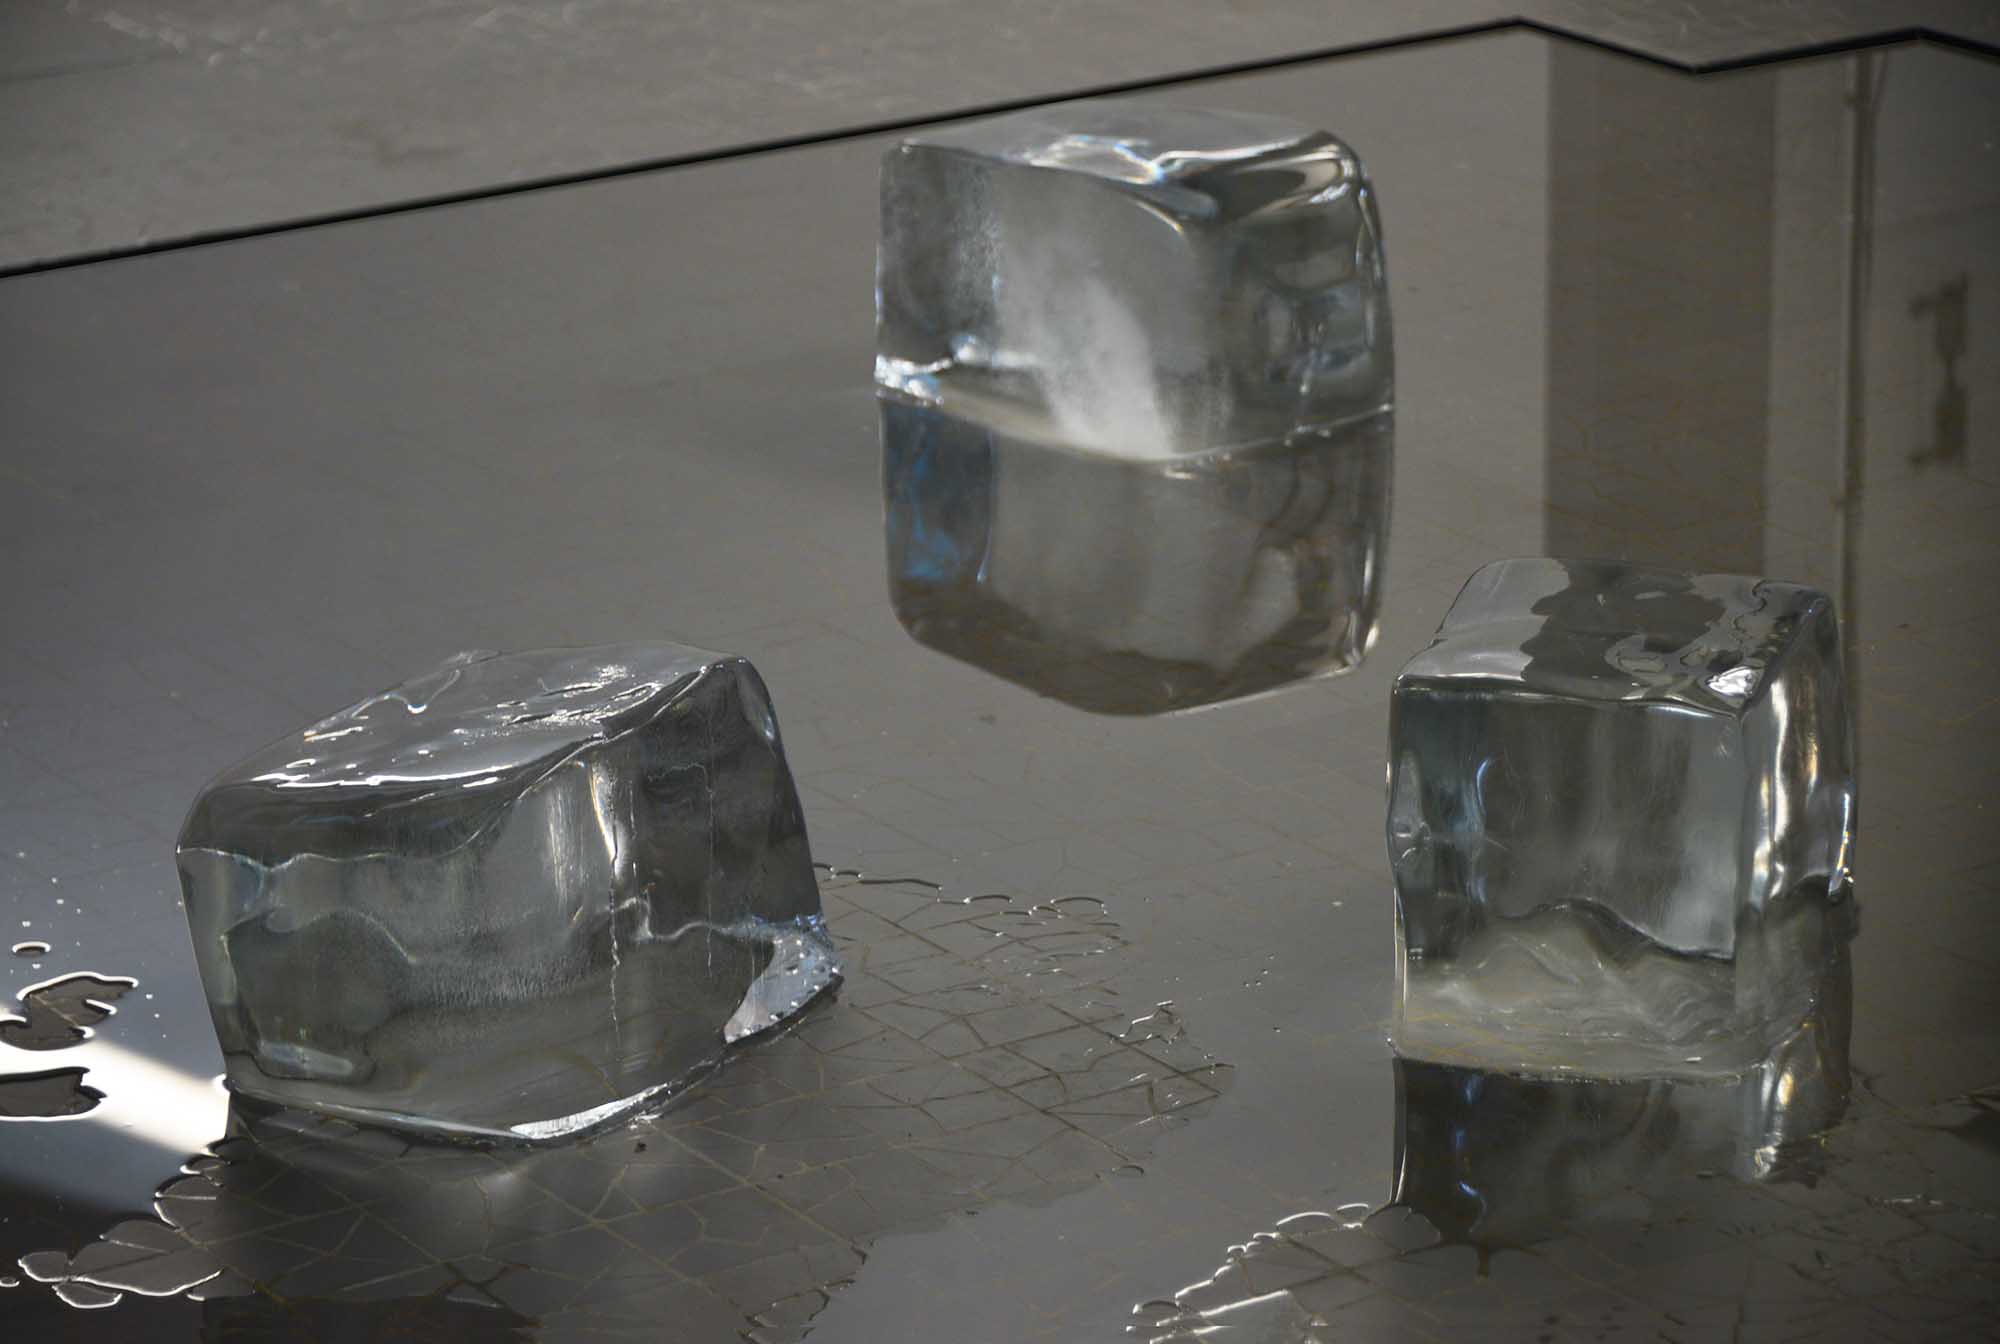 détail d’installation
blocs de glace
dimensions variables